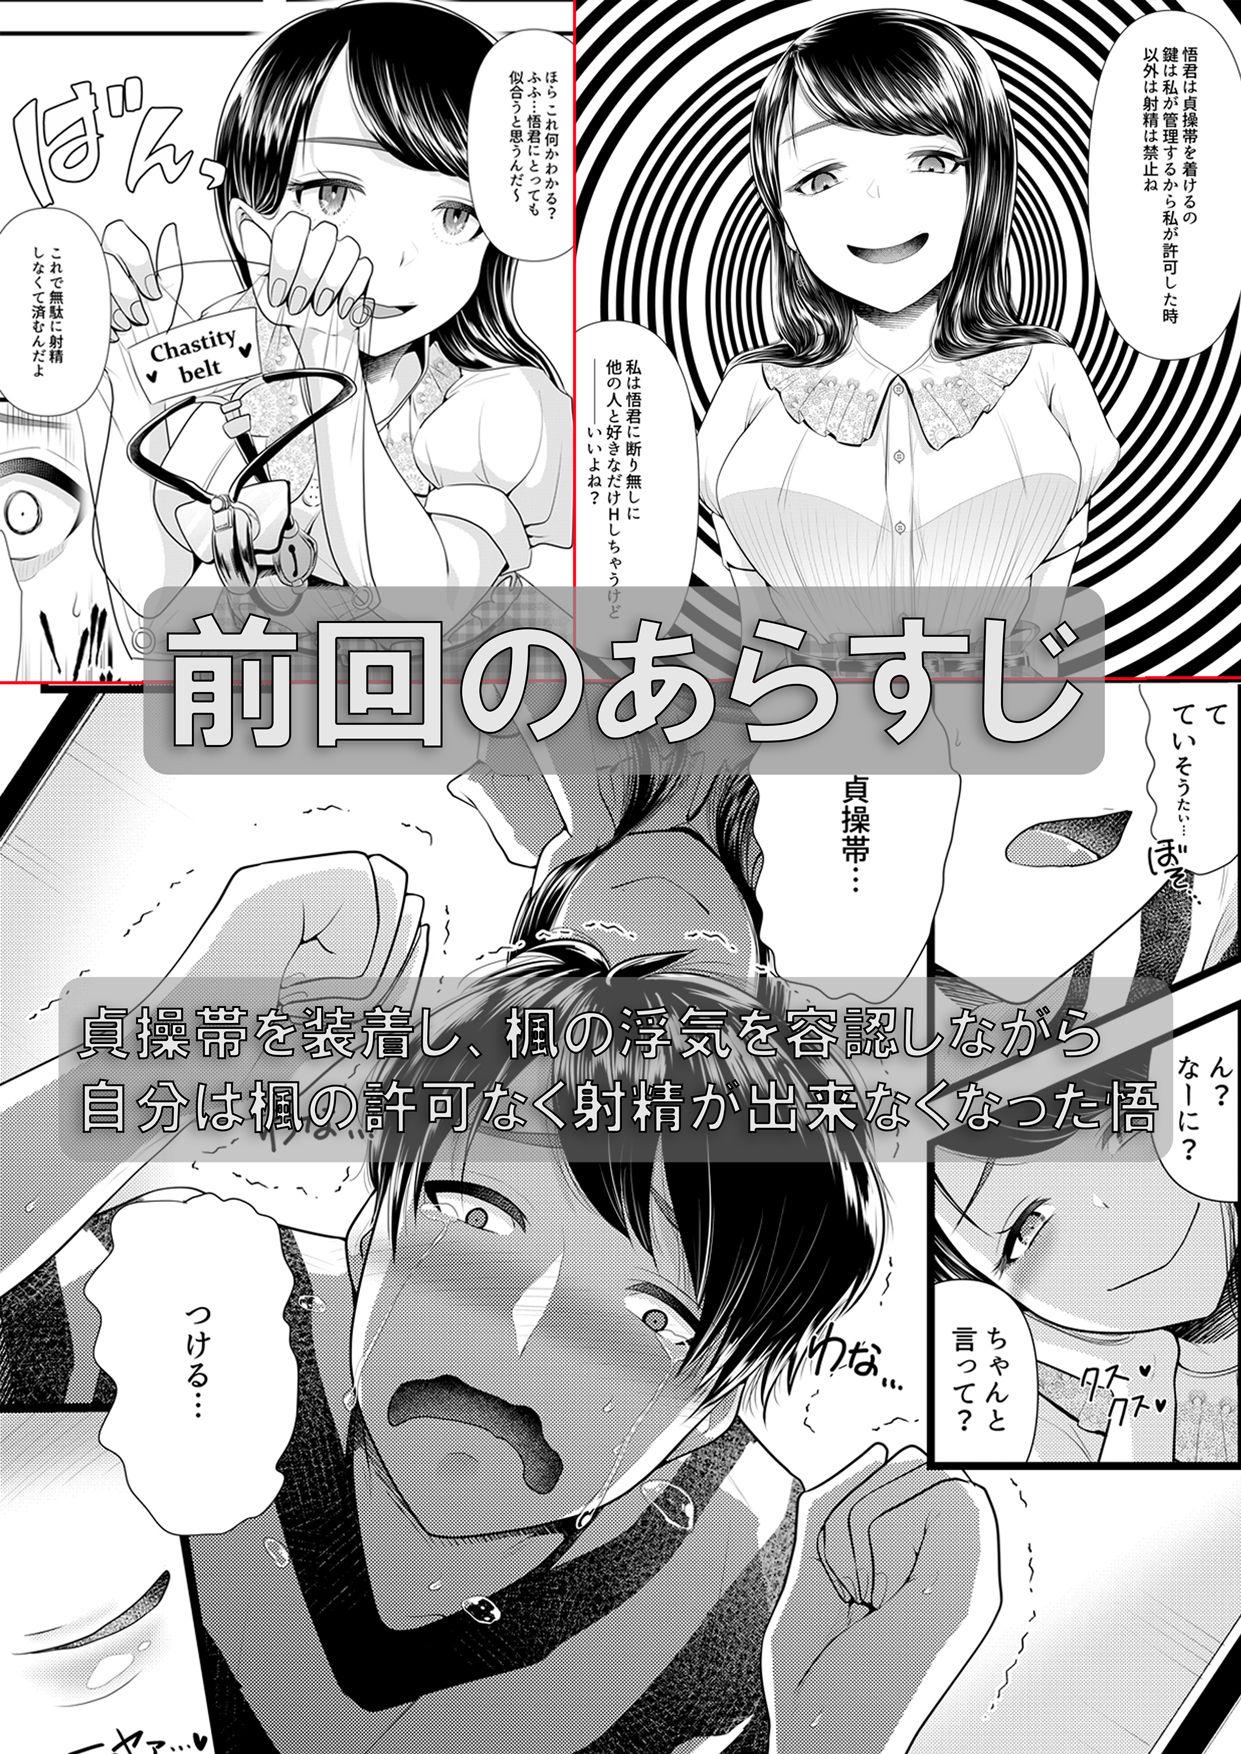 Pickup Hajimete no Netorare Maso-ka Choukyou 3 - Original Blowjob Porn - Page 2